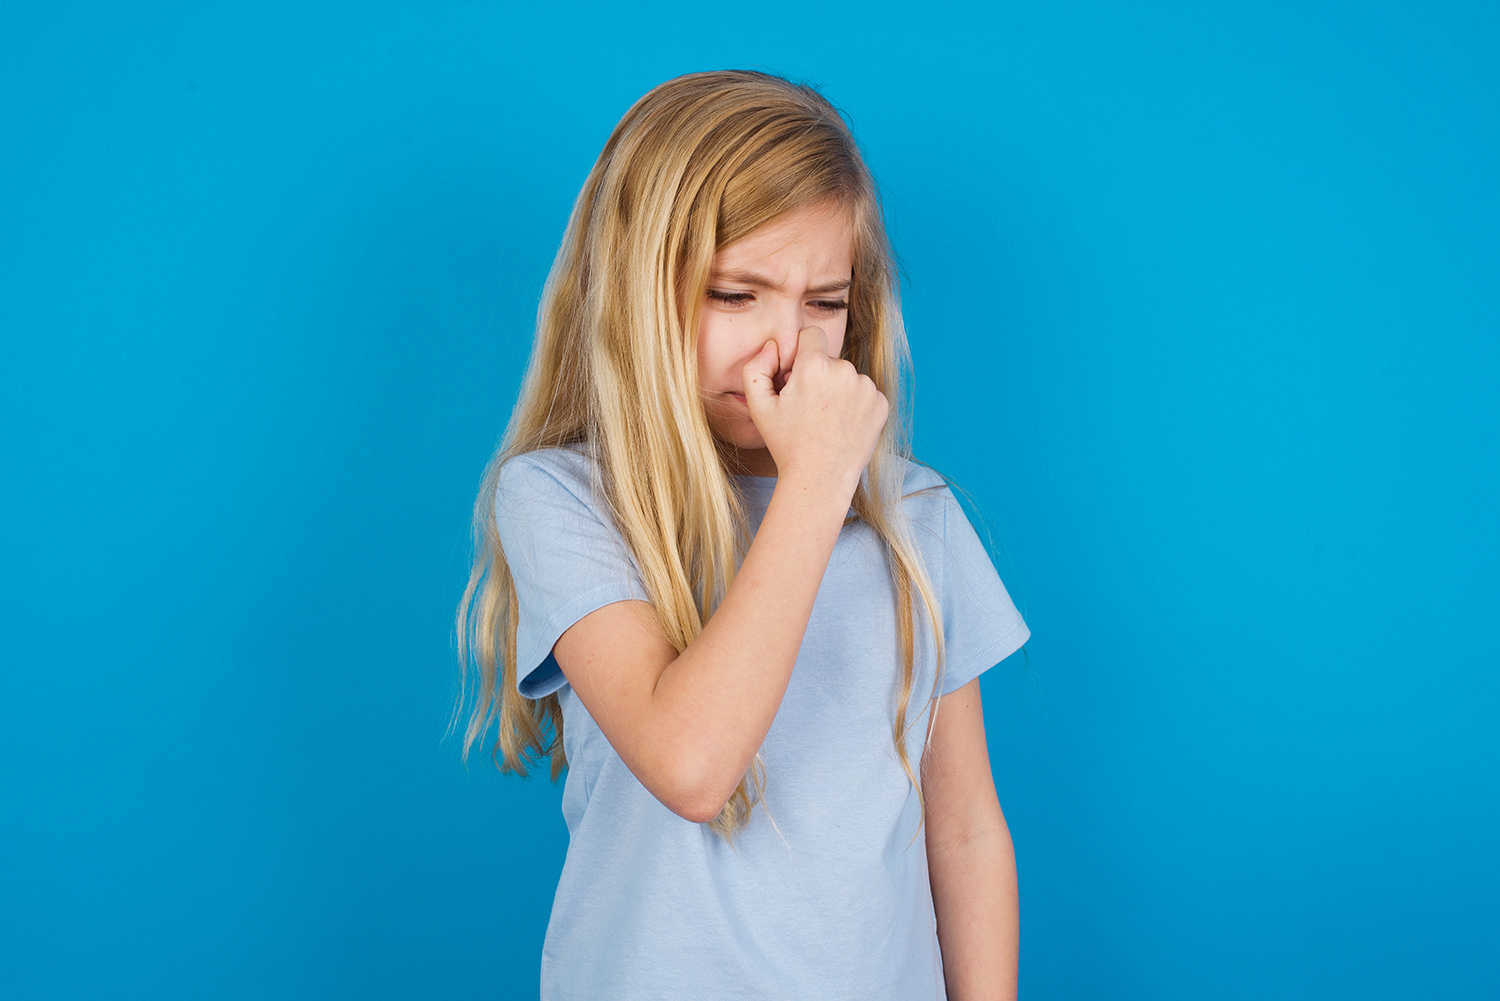 Застуда чи алергія: медики розповіли, як ідентифікувати алергію та полегшити симптоми